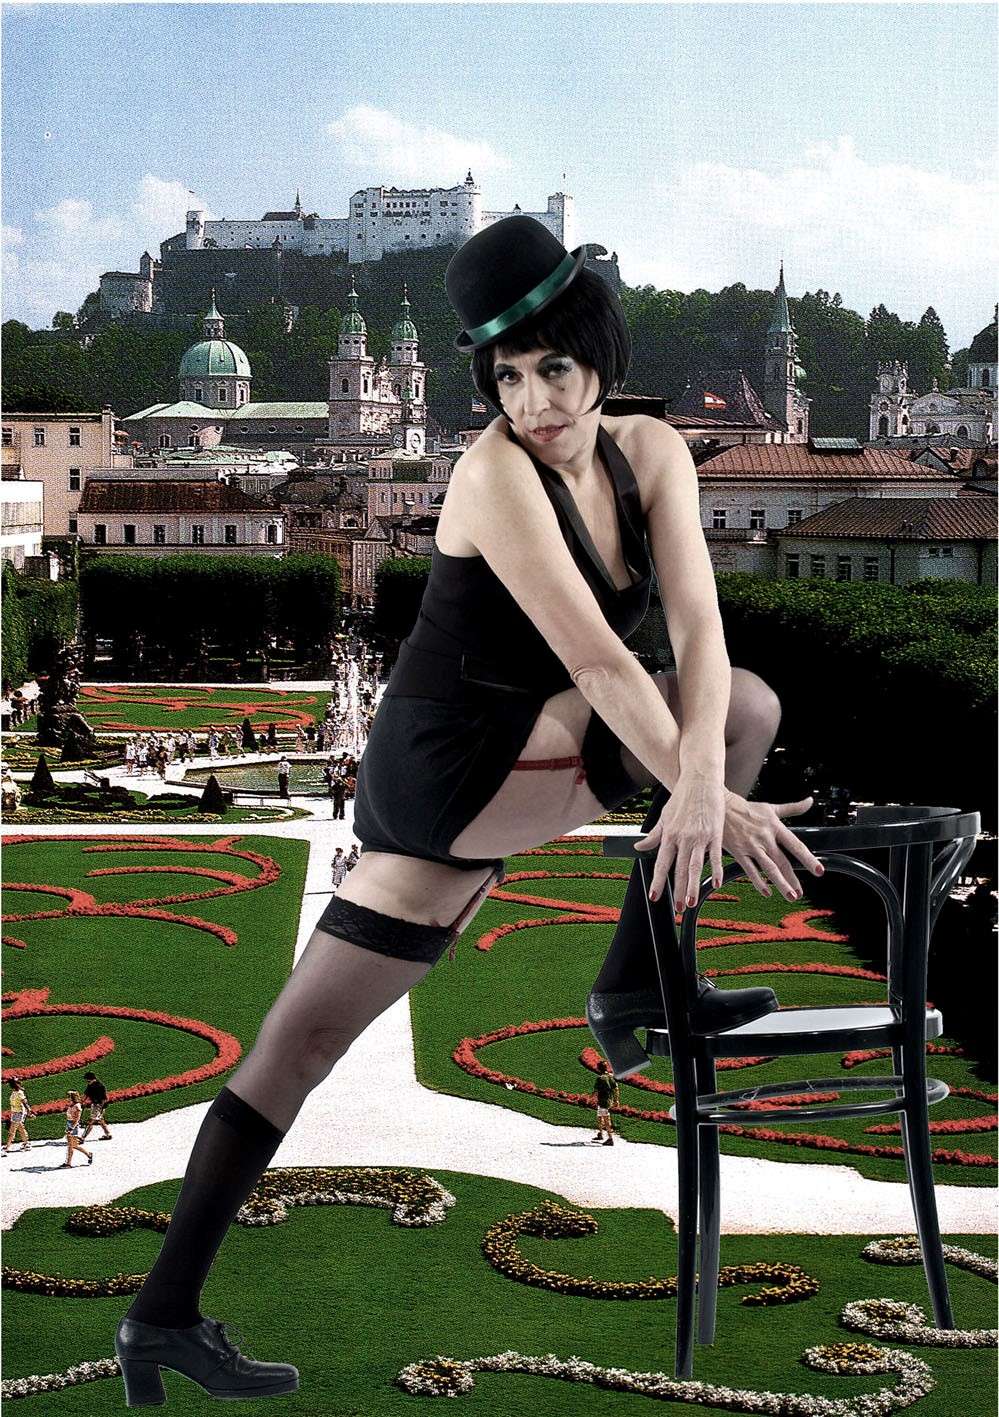 “Salzburg-Cabaret, Motiv 7” 2005, Fotodruck auf Papier, 70 x 50 cm